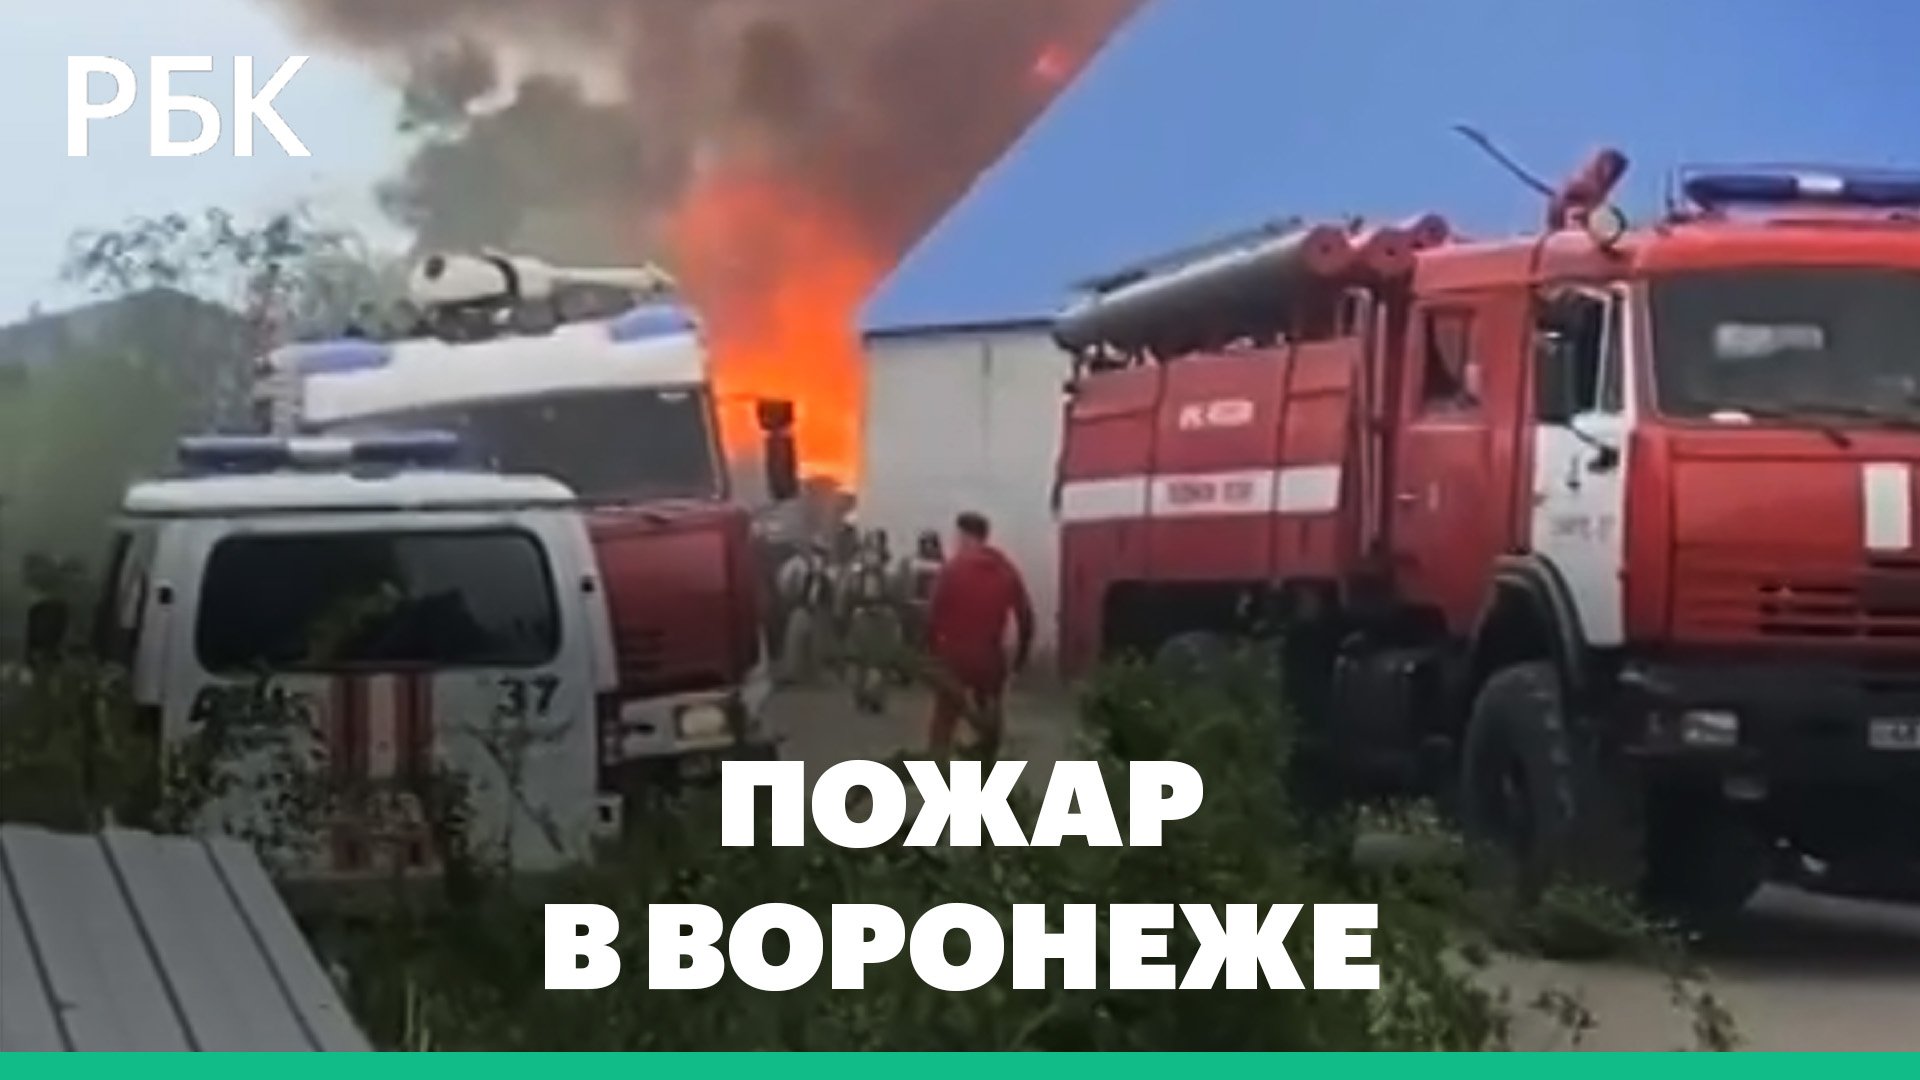 В Воронеже пожар на складе площадью 1200 кв.м.